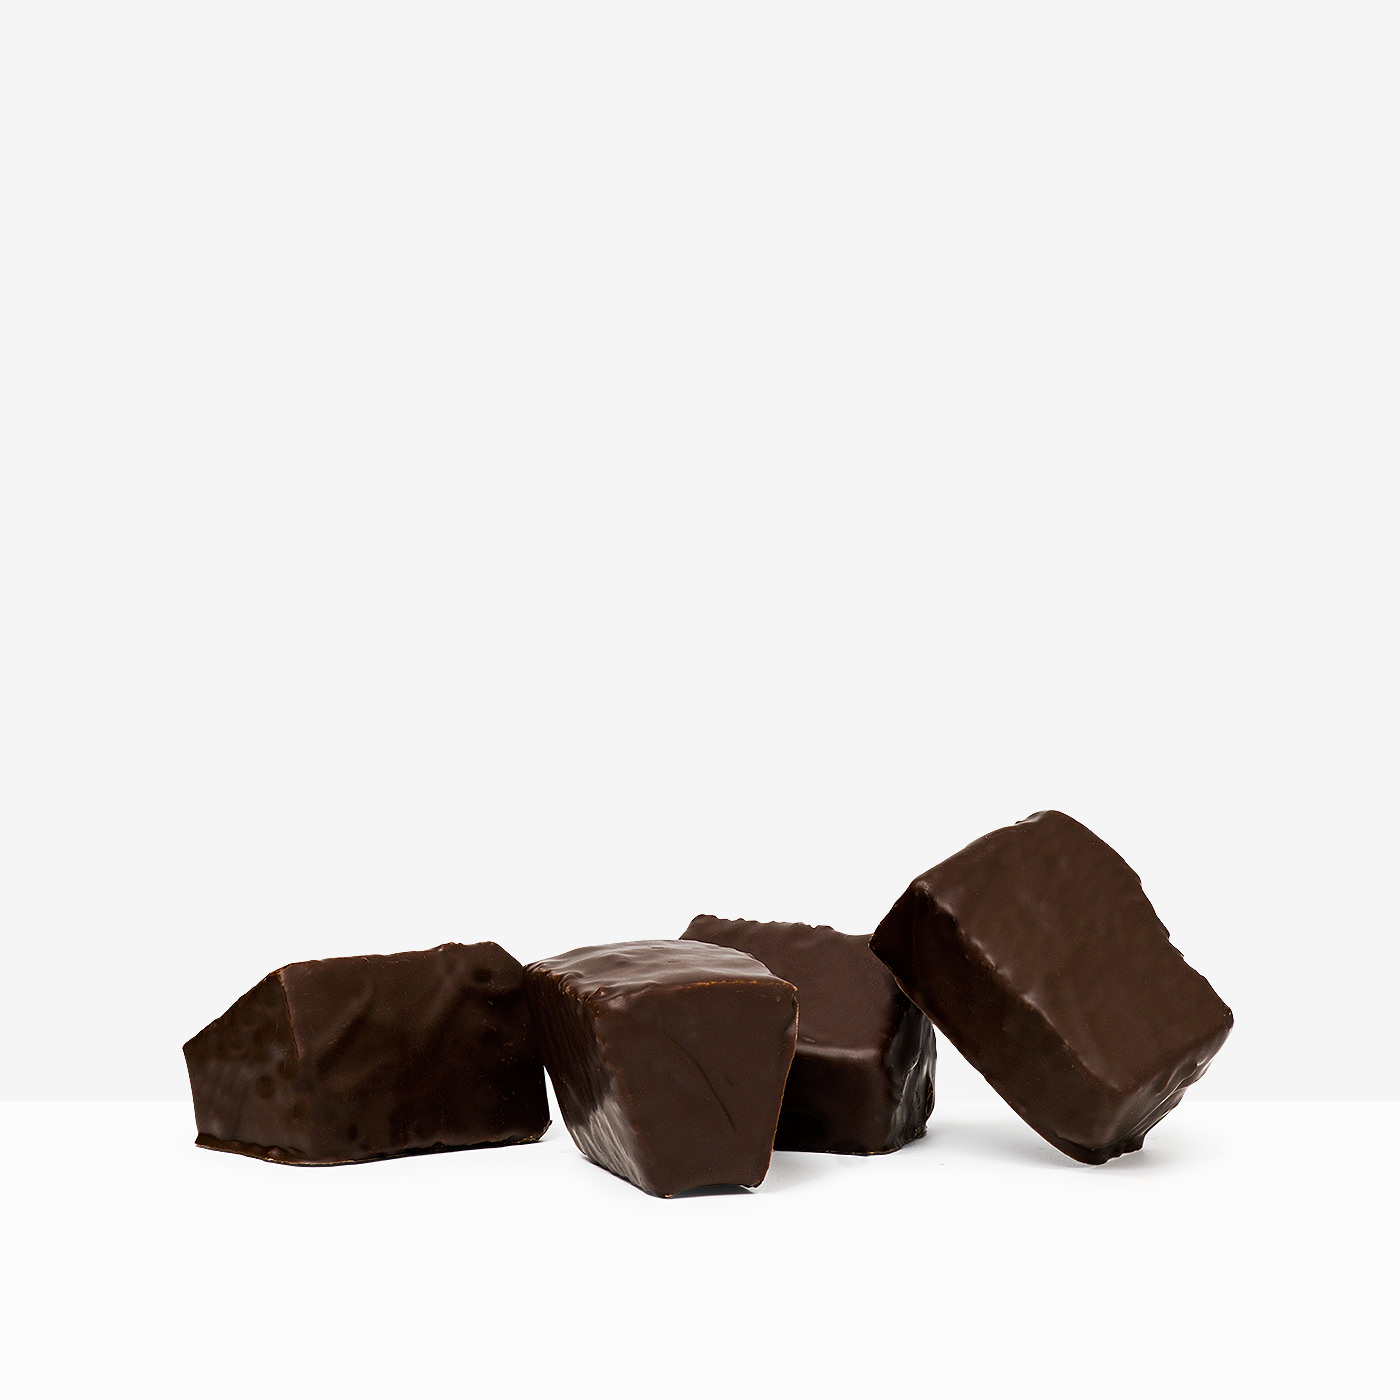 Noble Baumspitzen covered with dark chocolate | GROCH & ERBEN